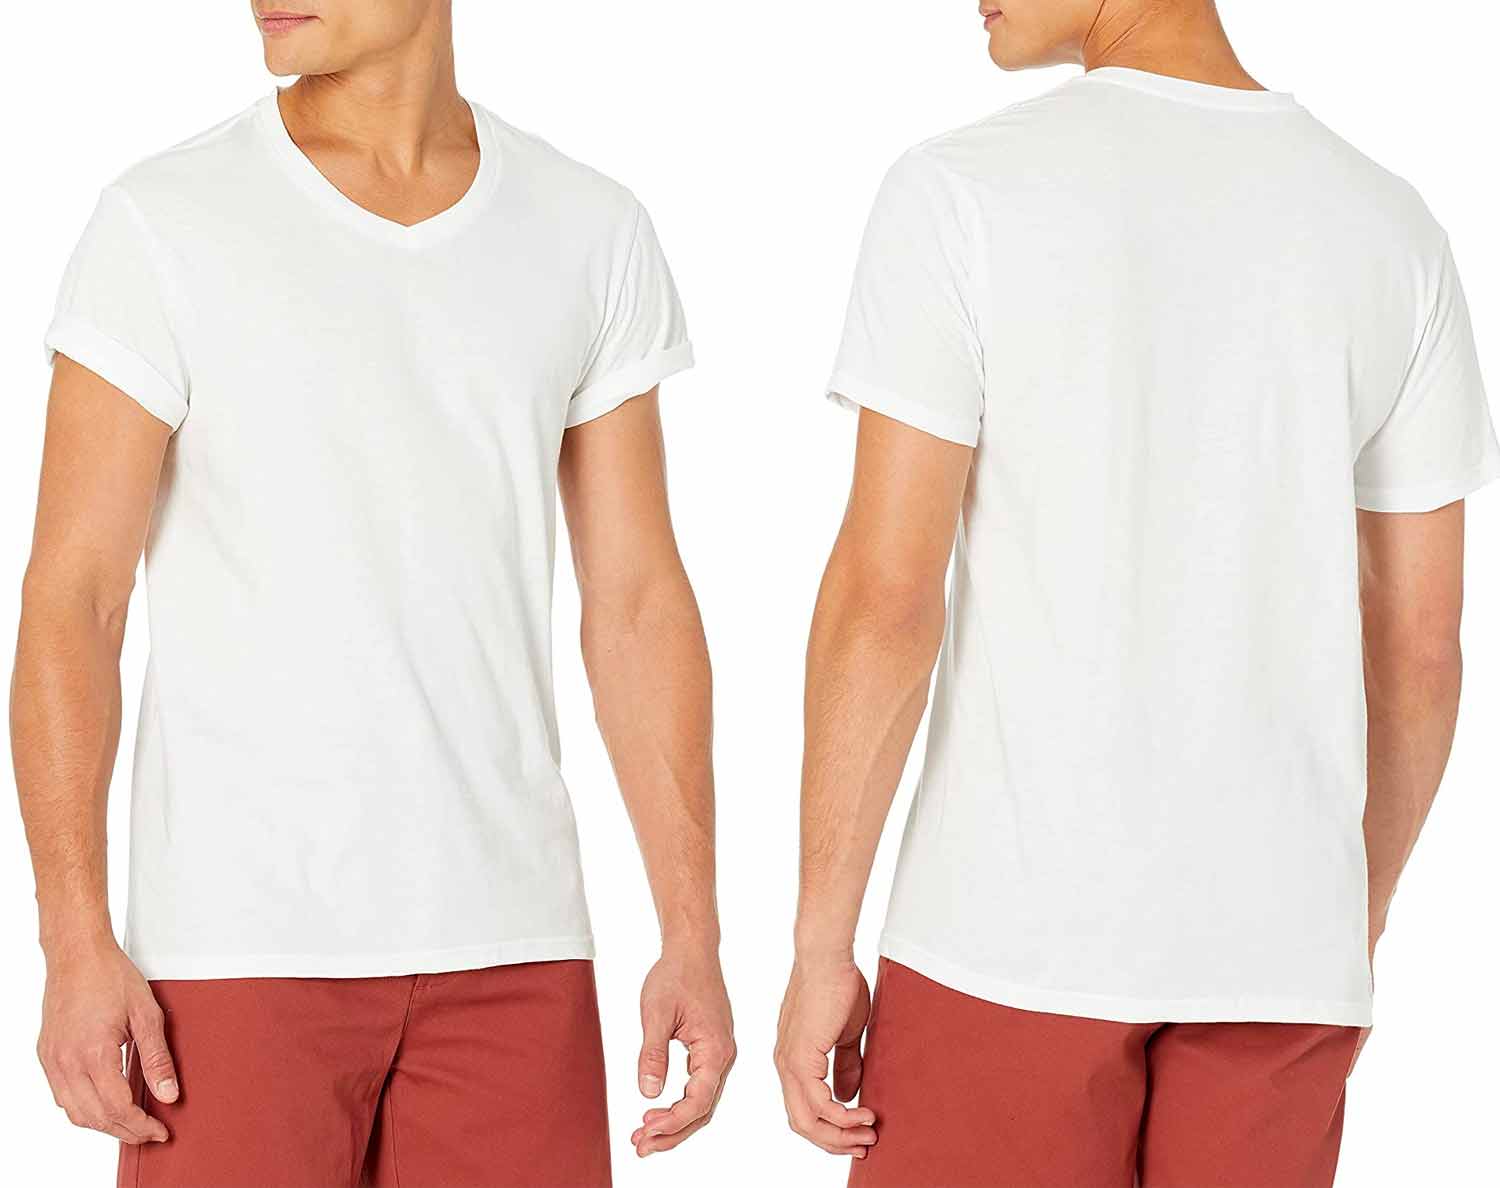 Mens Modal Mix Bamboo Fiber V Neck T-Shirt Undershirt Sleepwear Top Nightwear 